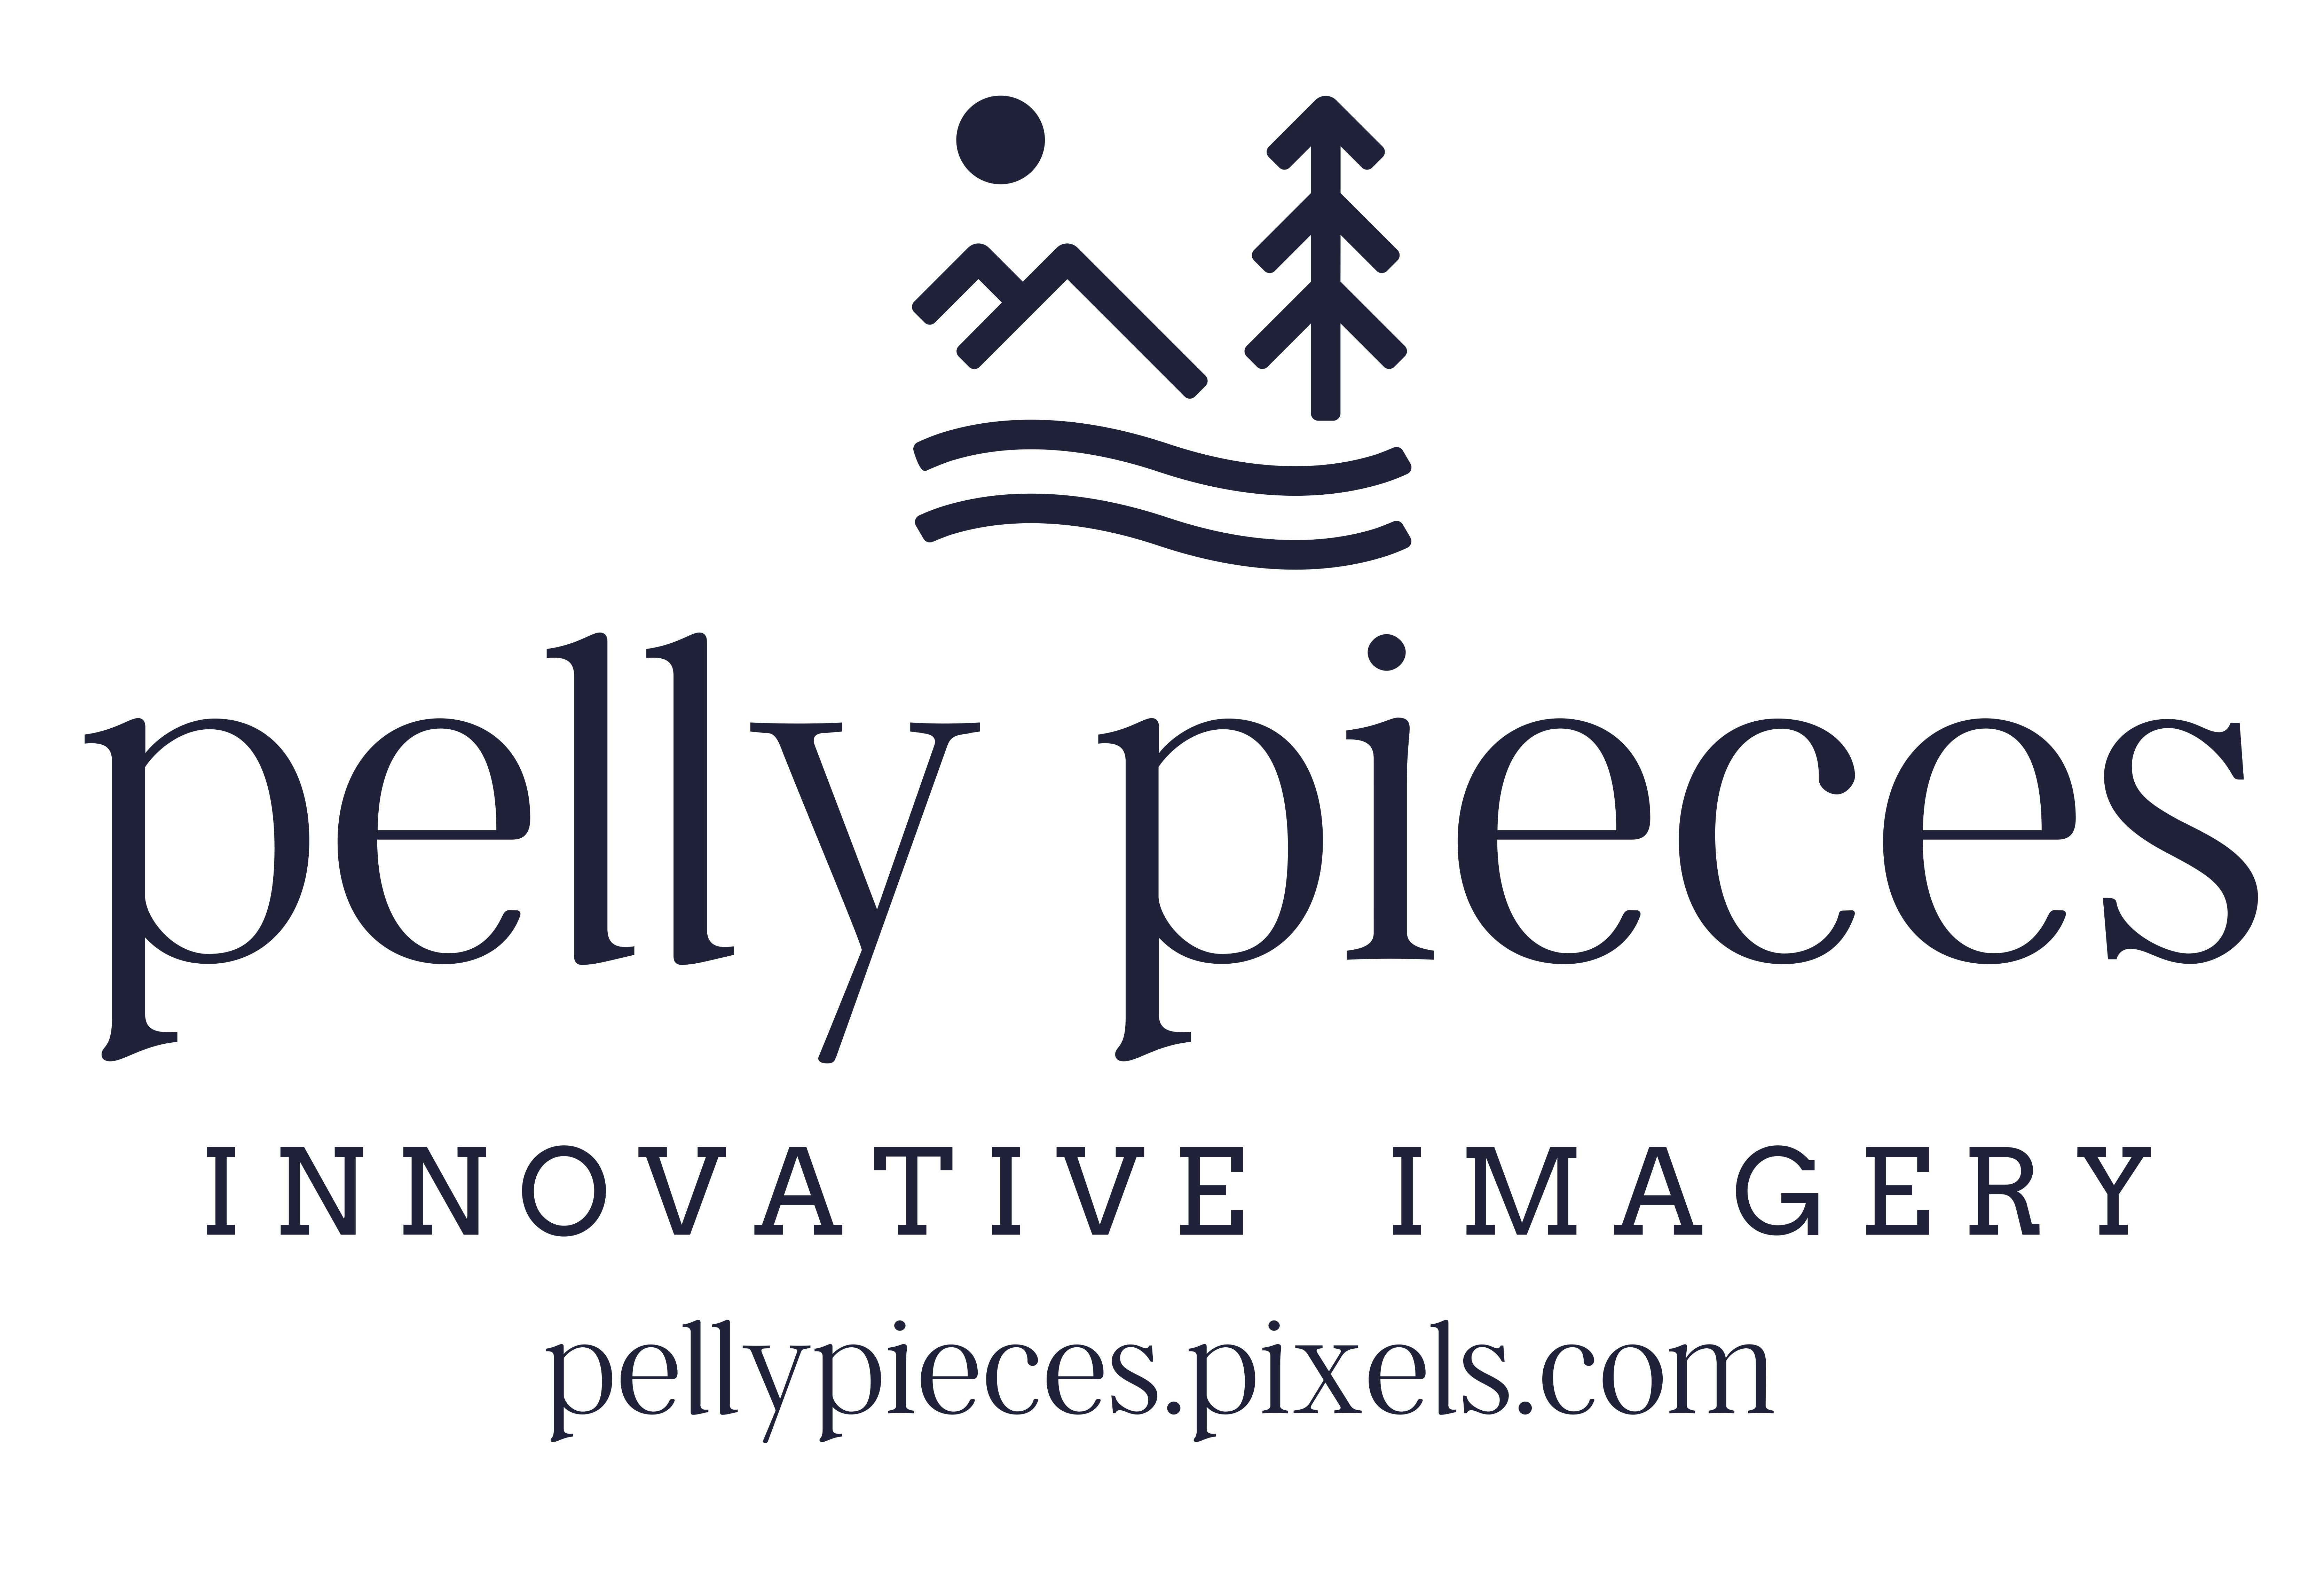 Pelly Pieces